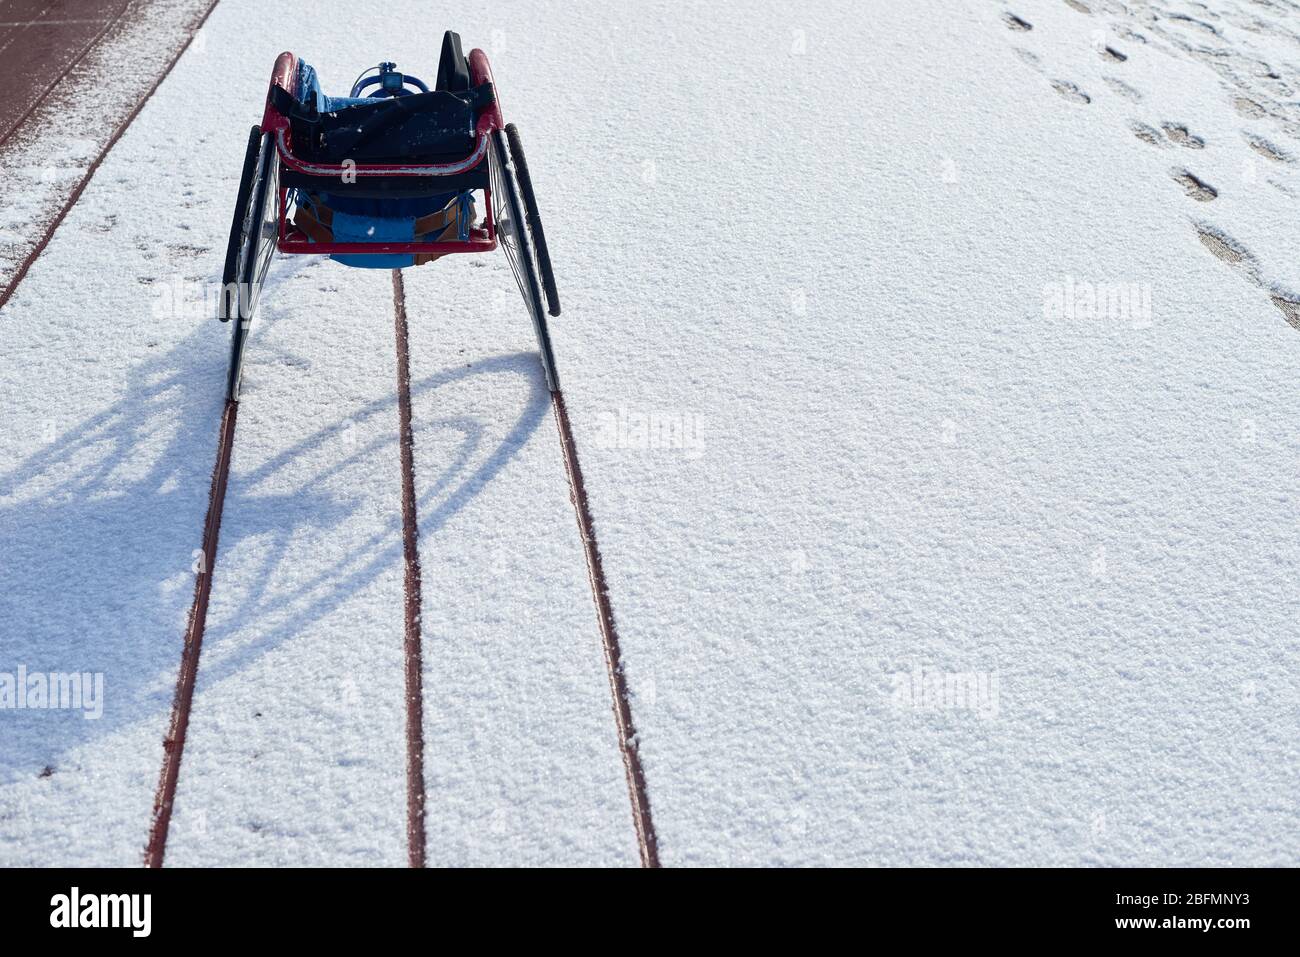 Vue arrière d'un fauteuil roulant de course moderne vide debout sur une piste extérieure et un stade de terrain avec des traces de roues vues sur la neige Banque D'Images